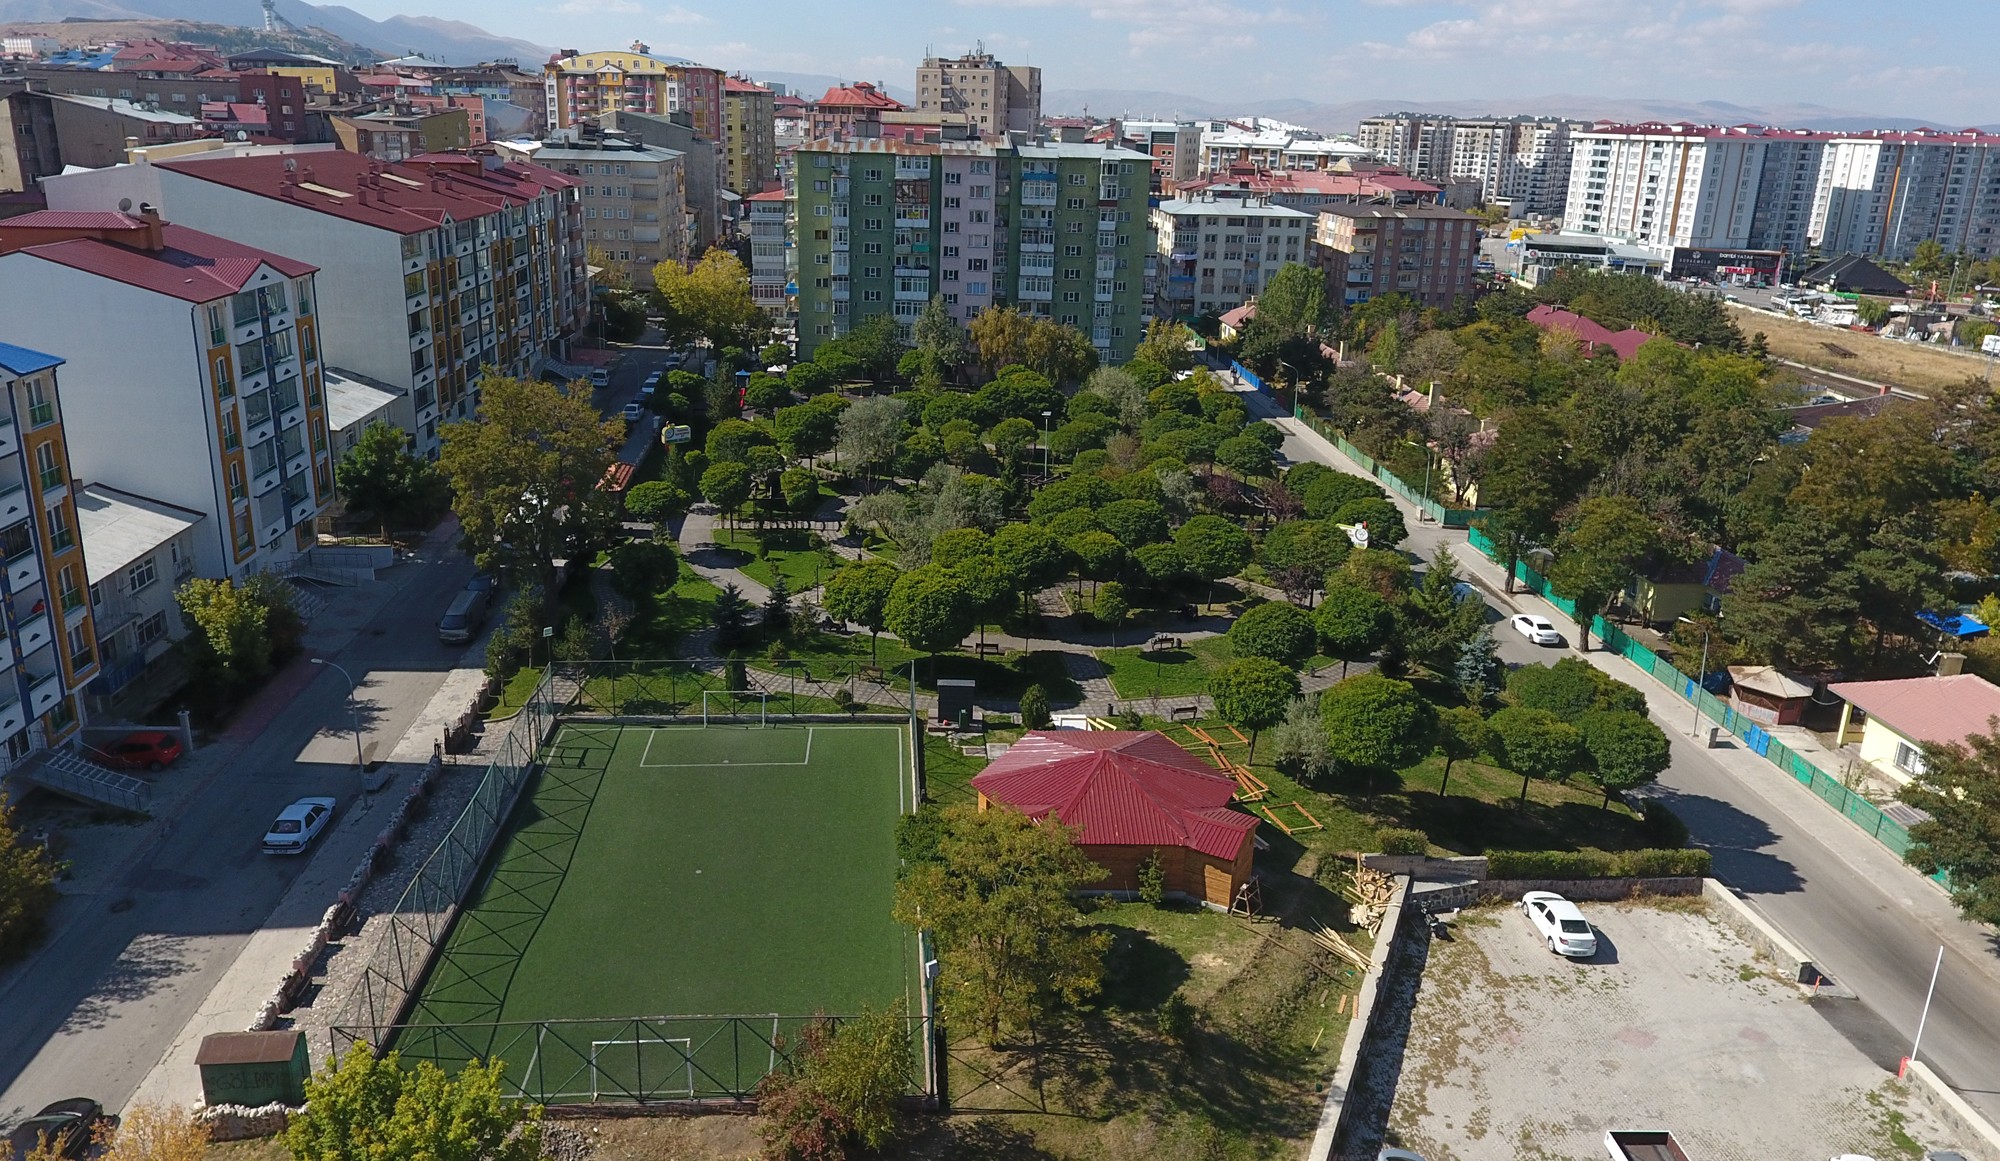 Muhsin Yazıcıoğlu Parkı’na yepyeni çehre